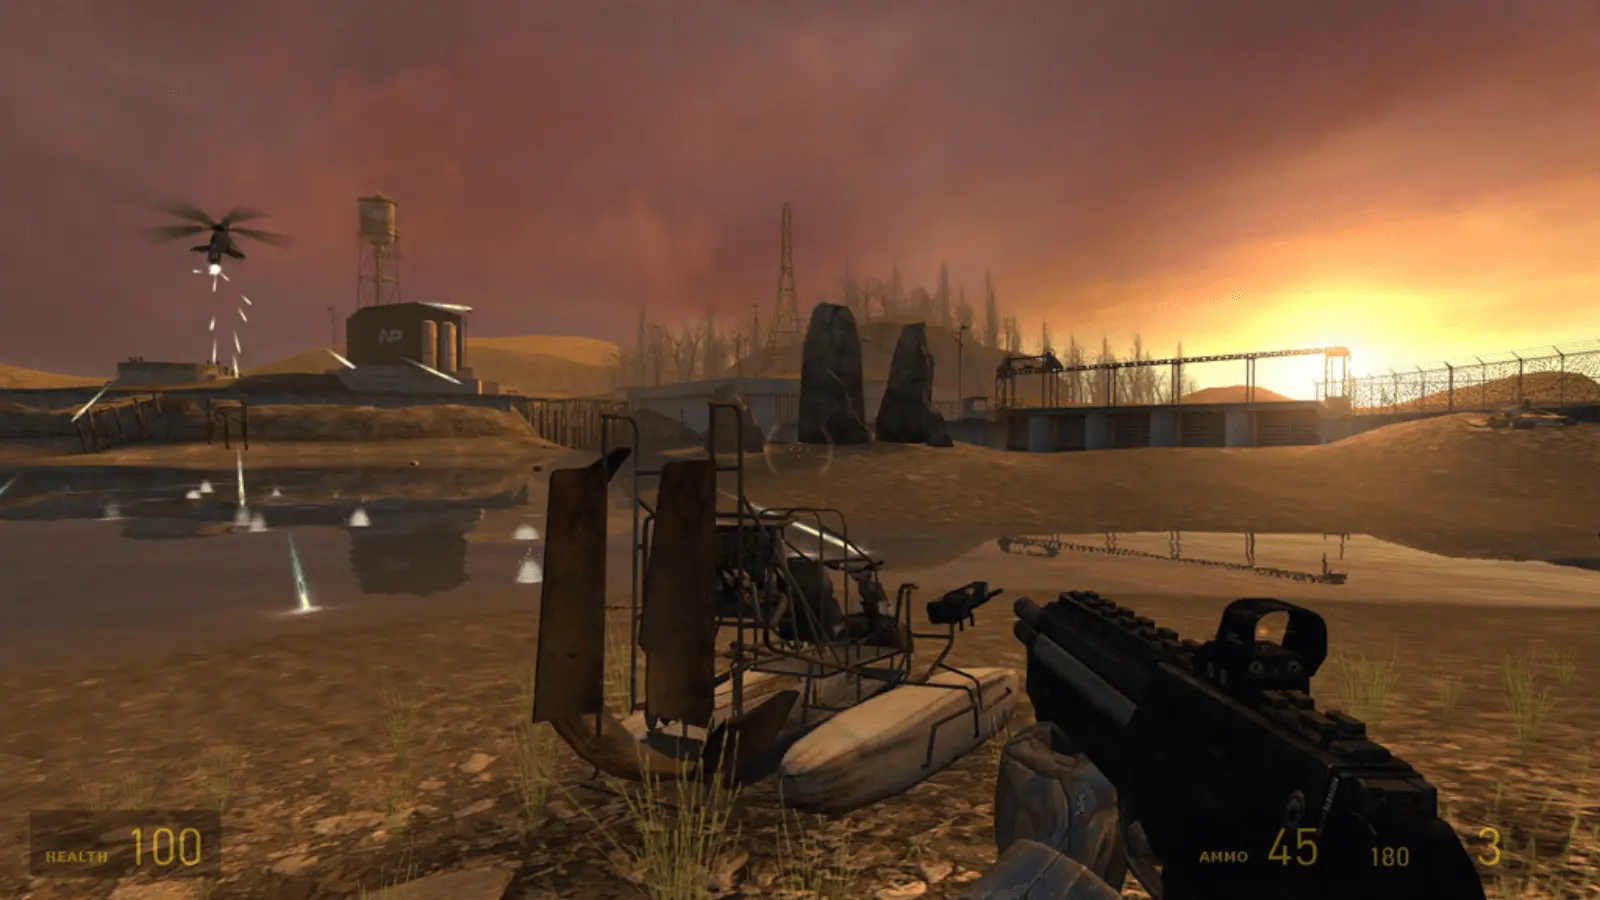 Half Life II este un alt joc de tip first-person shooter care a fost dezvoltat și publicat de Valve